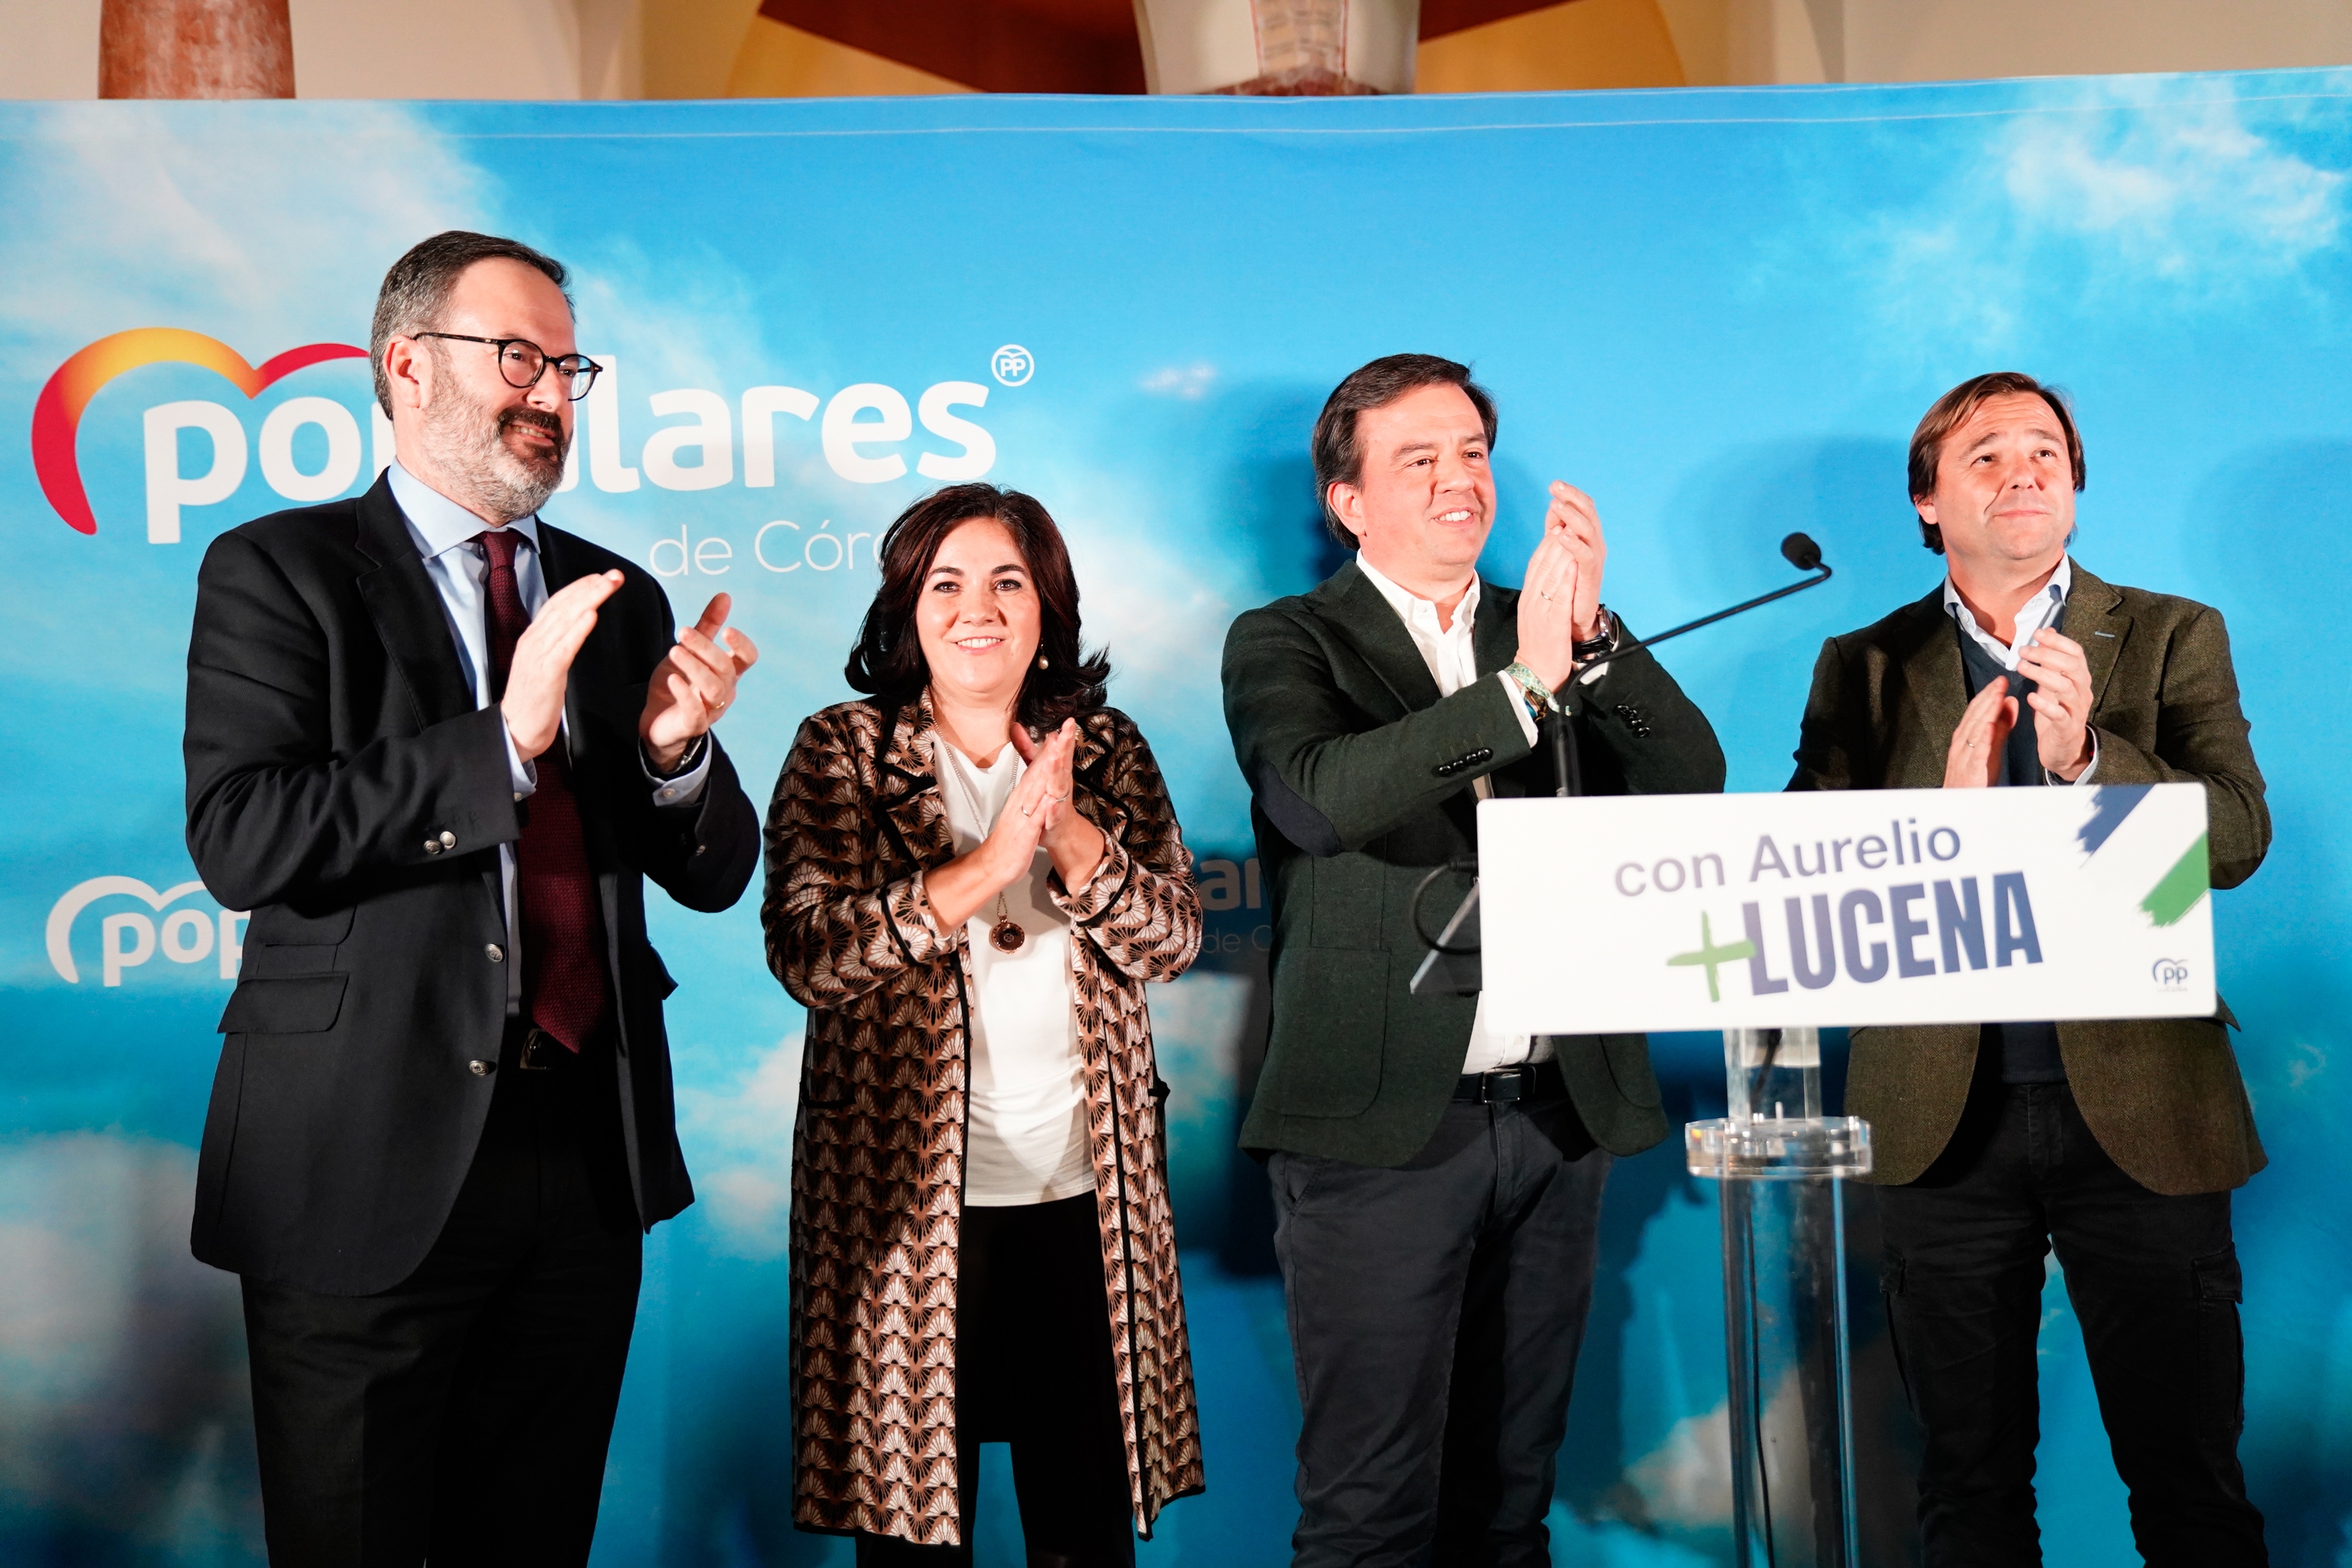 Presentación de la candidatura de Aurelio Fernández